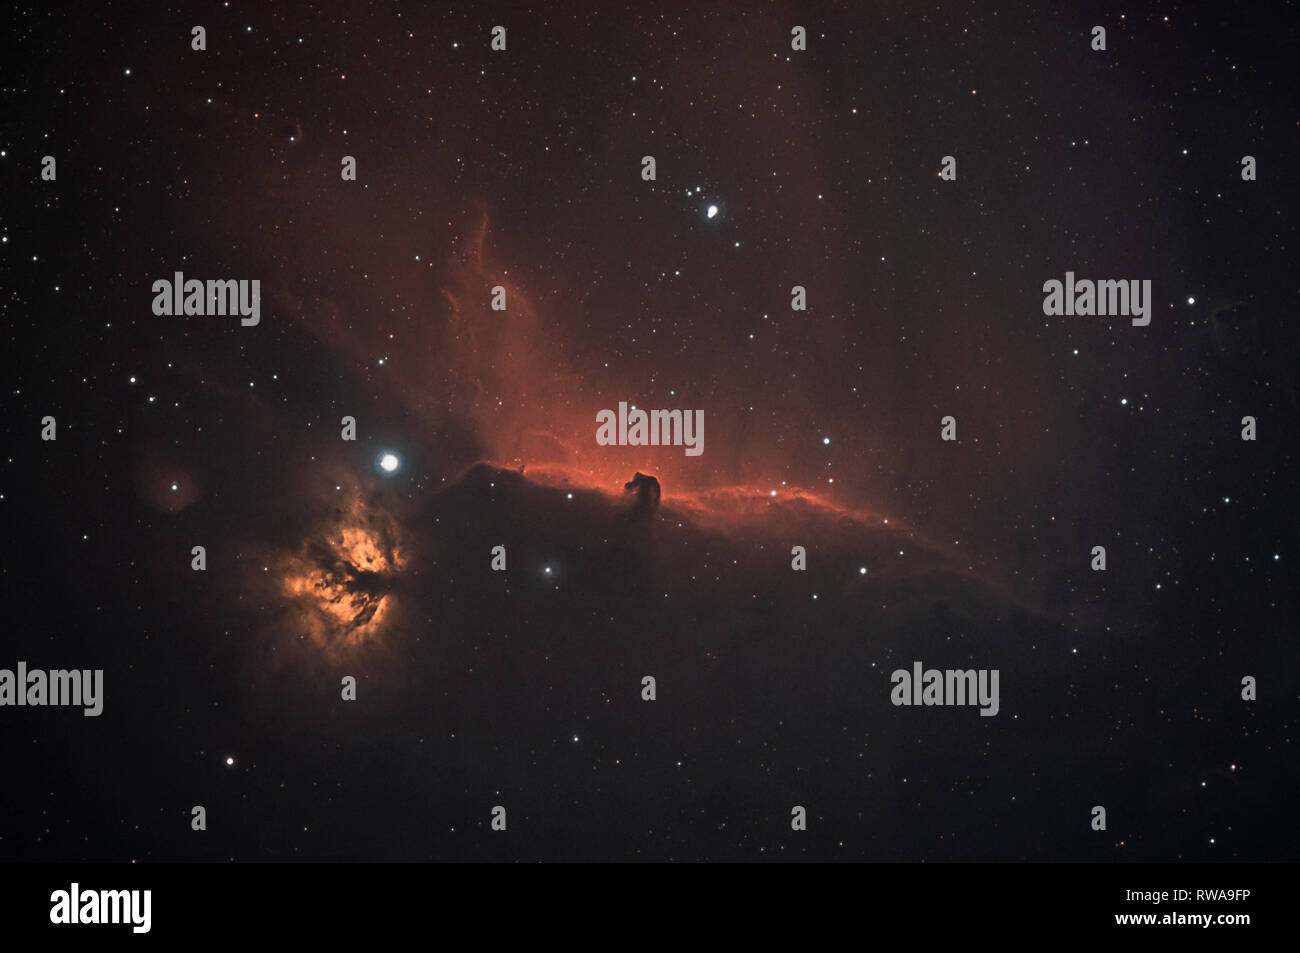 Testa di cavallo e la nebulosa Fiamma prese con dedicato telecamera astronomica sul telescopio Foto Stock